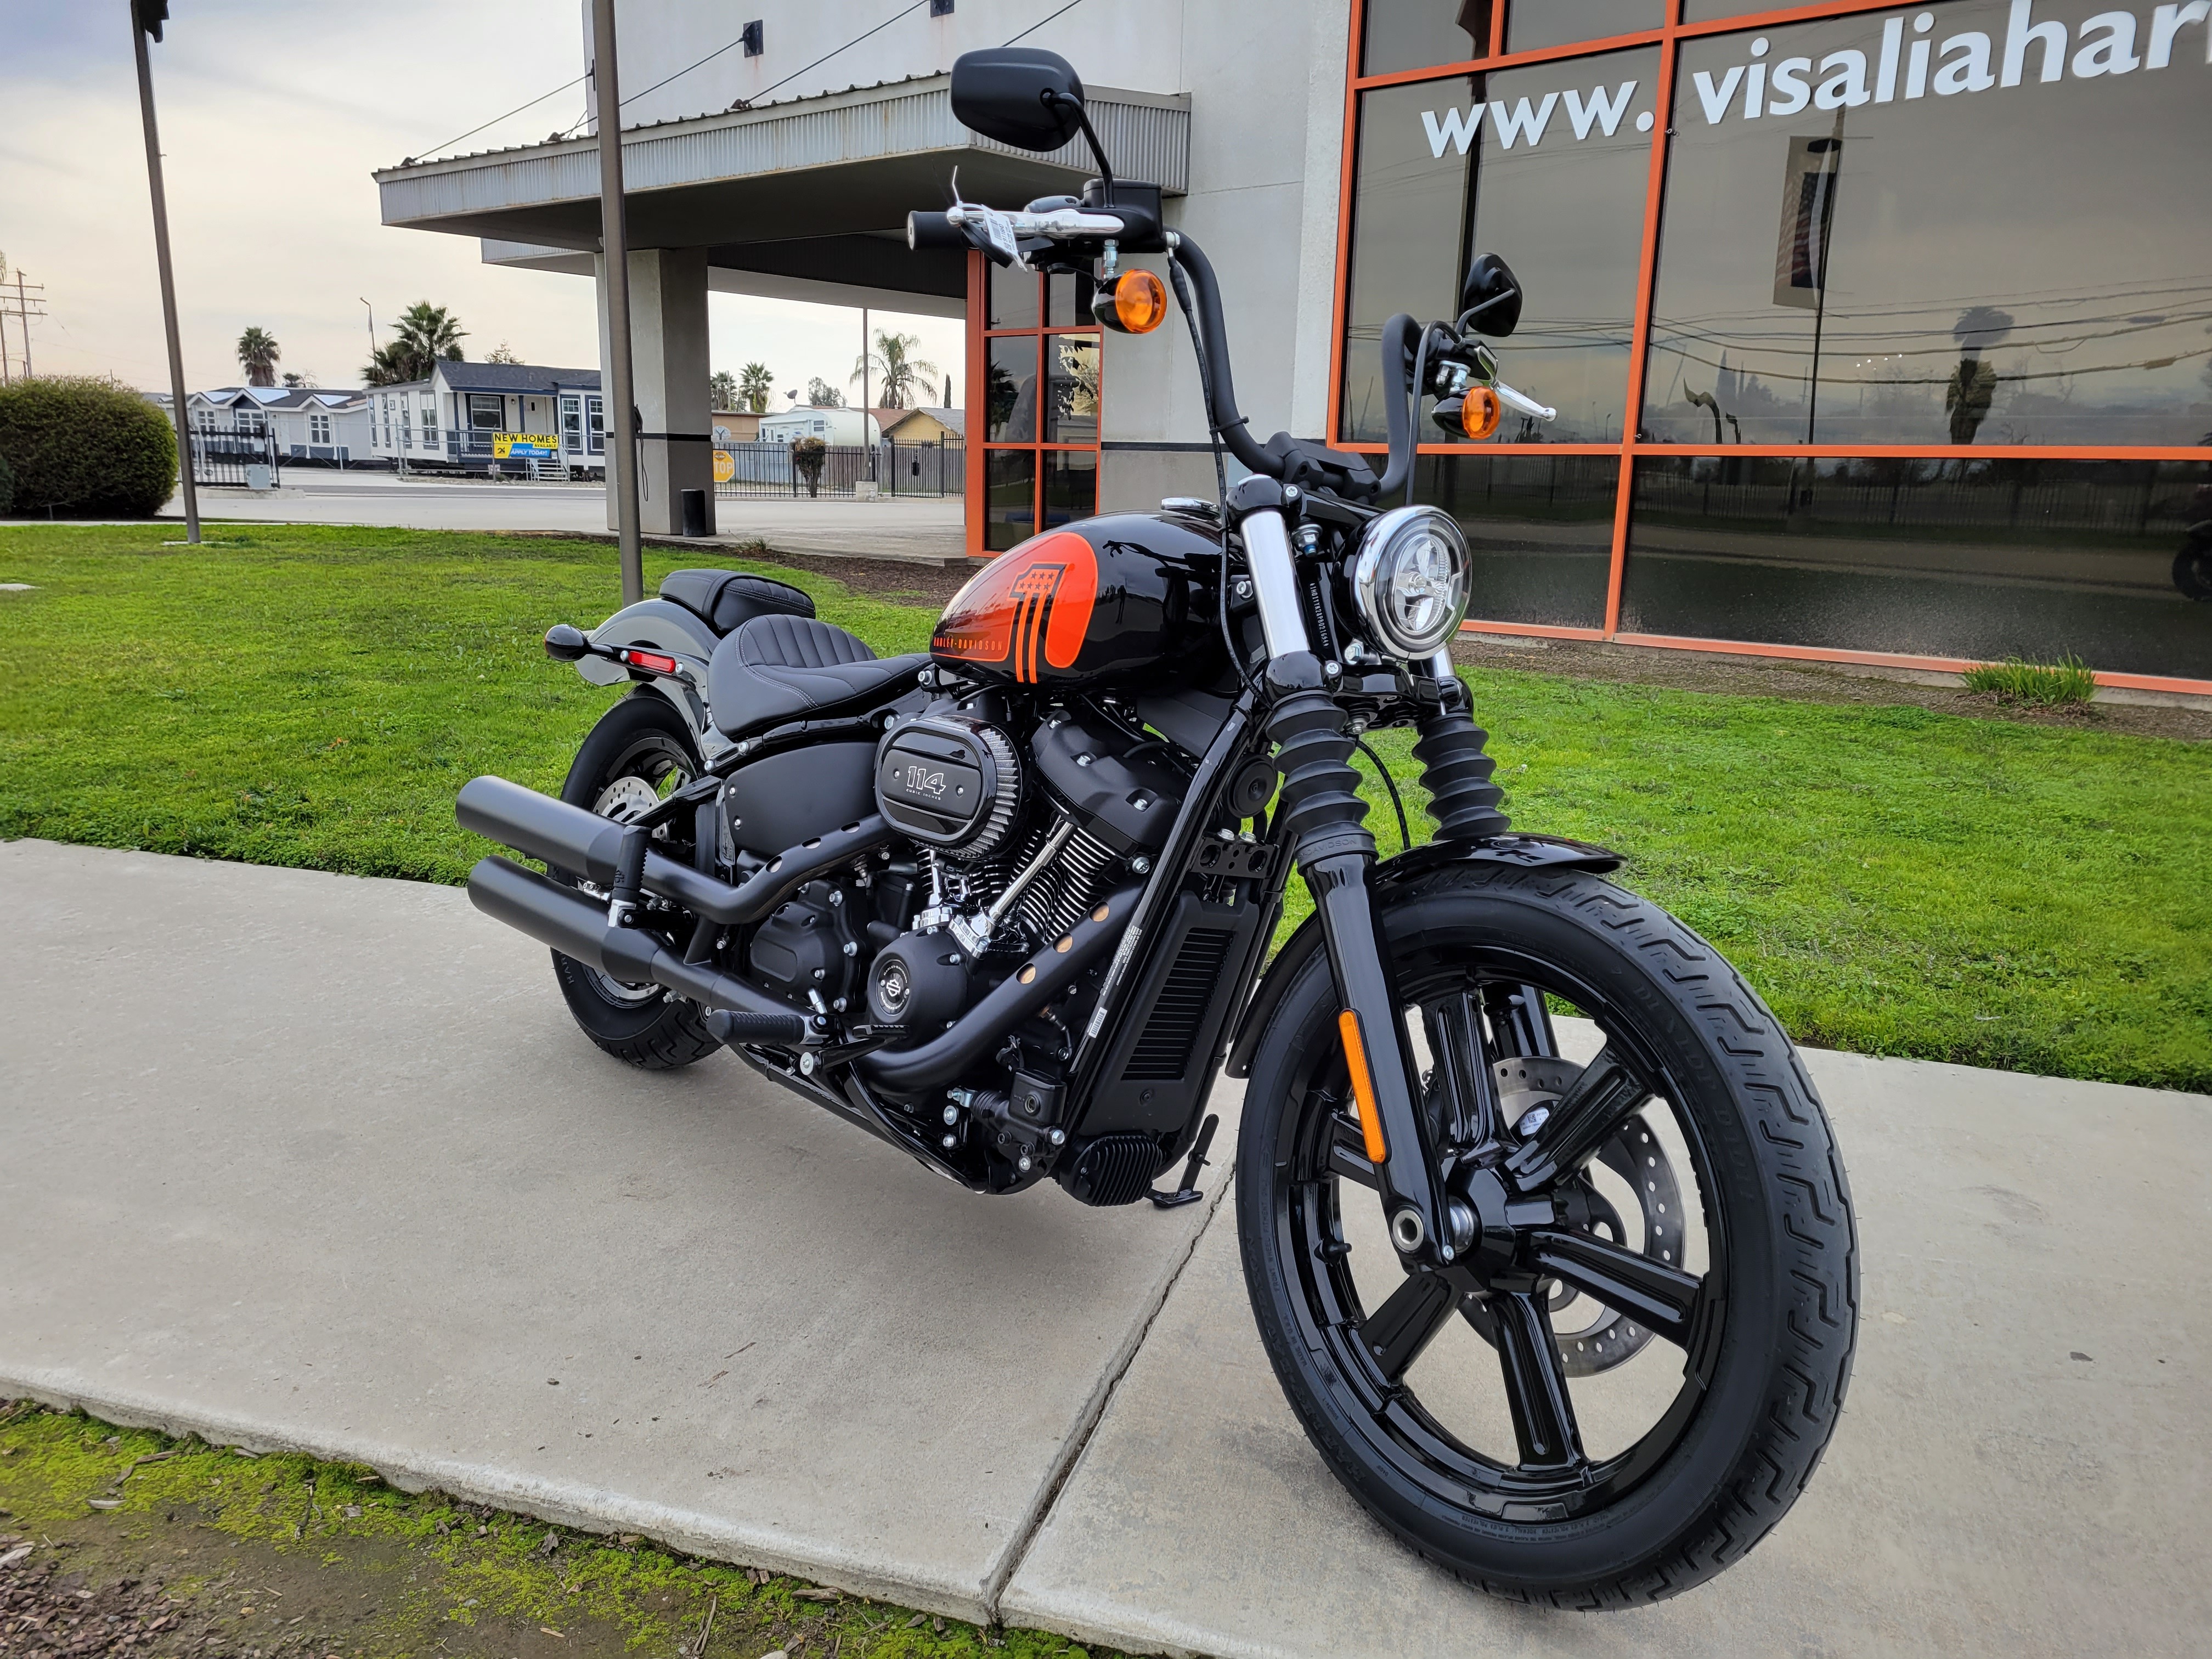 2023 Harley-Davidson Softail Street Bob 114 at Visalia Harley-Davidson